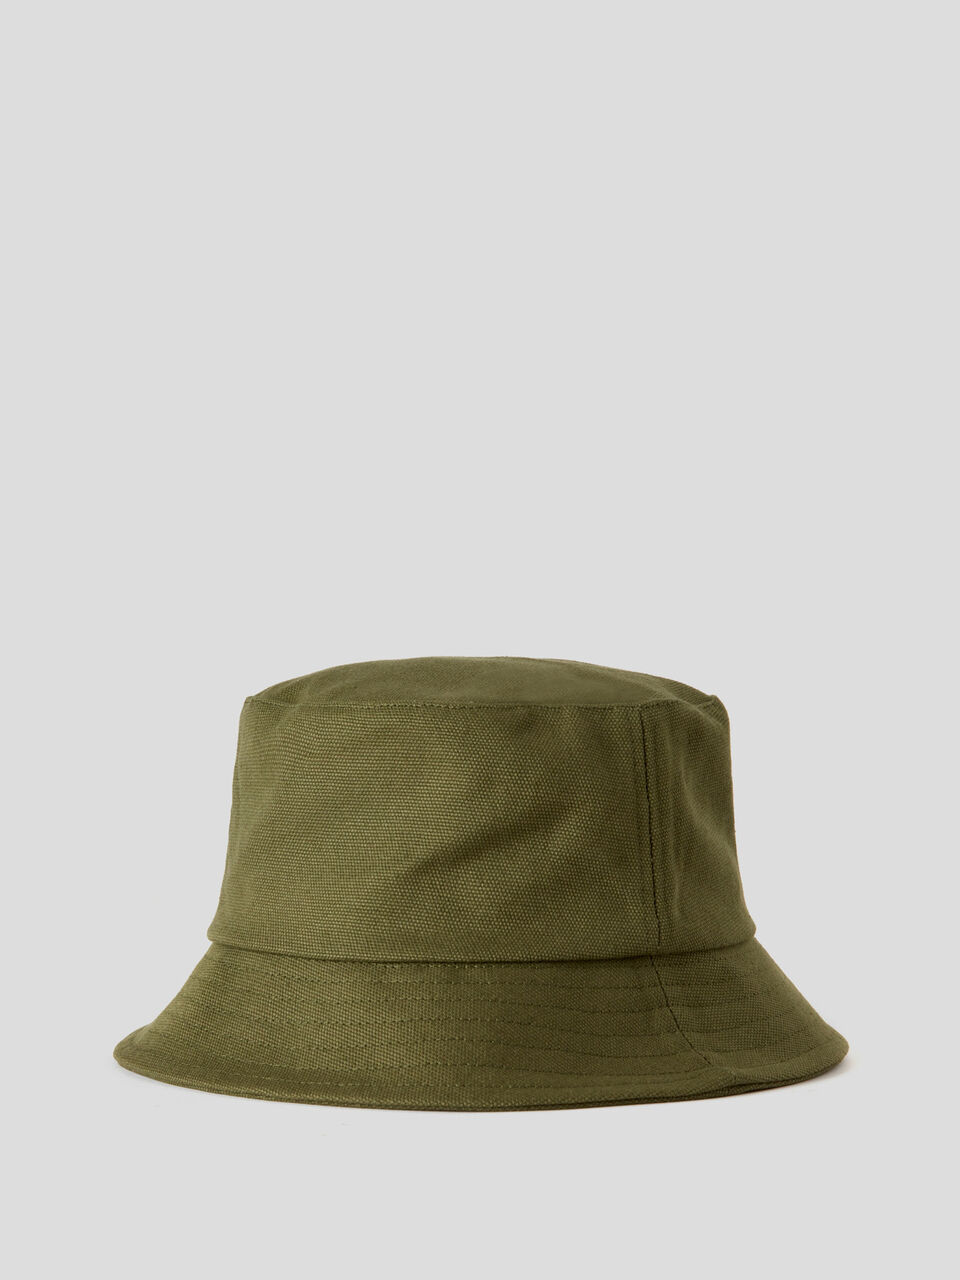 Custom Fishing Hat for Fisherman One Size Black Denim | FishinGuyz